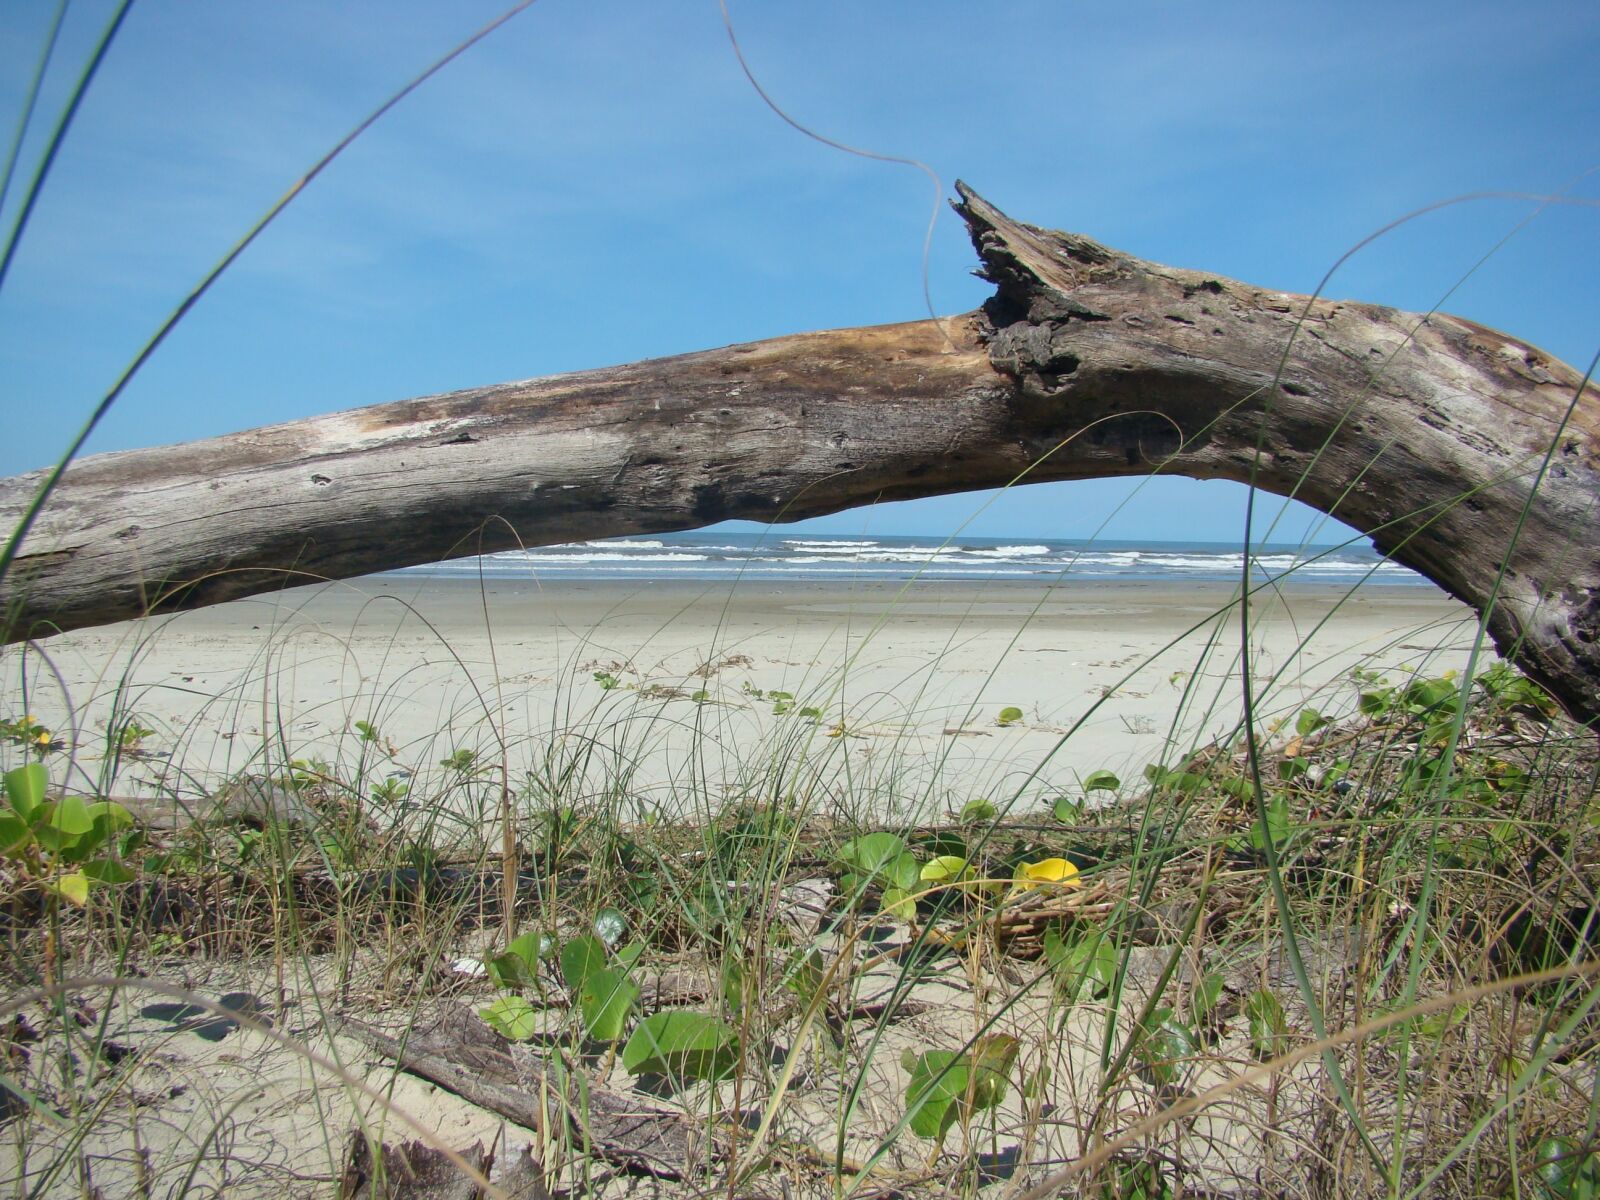 Sony DSC-H7 sample photo. Trunk, beach, mar photography